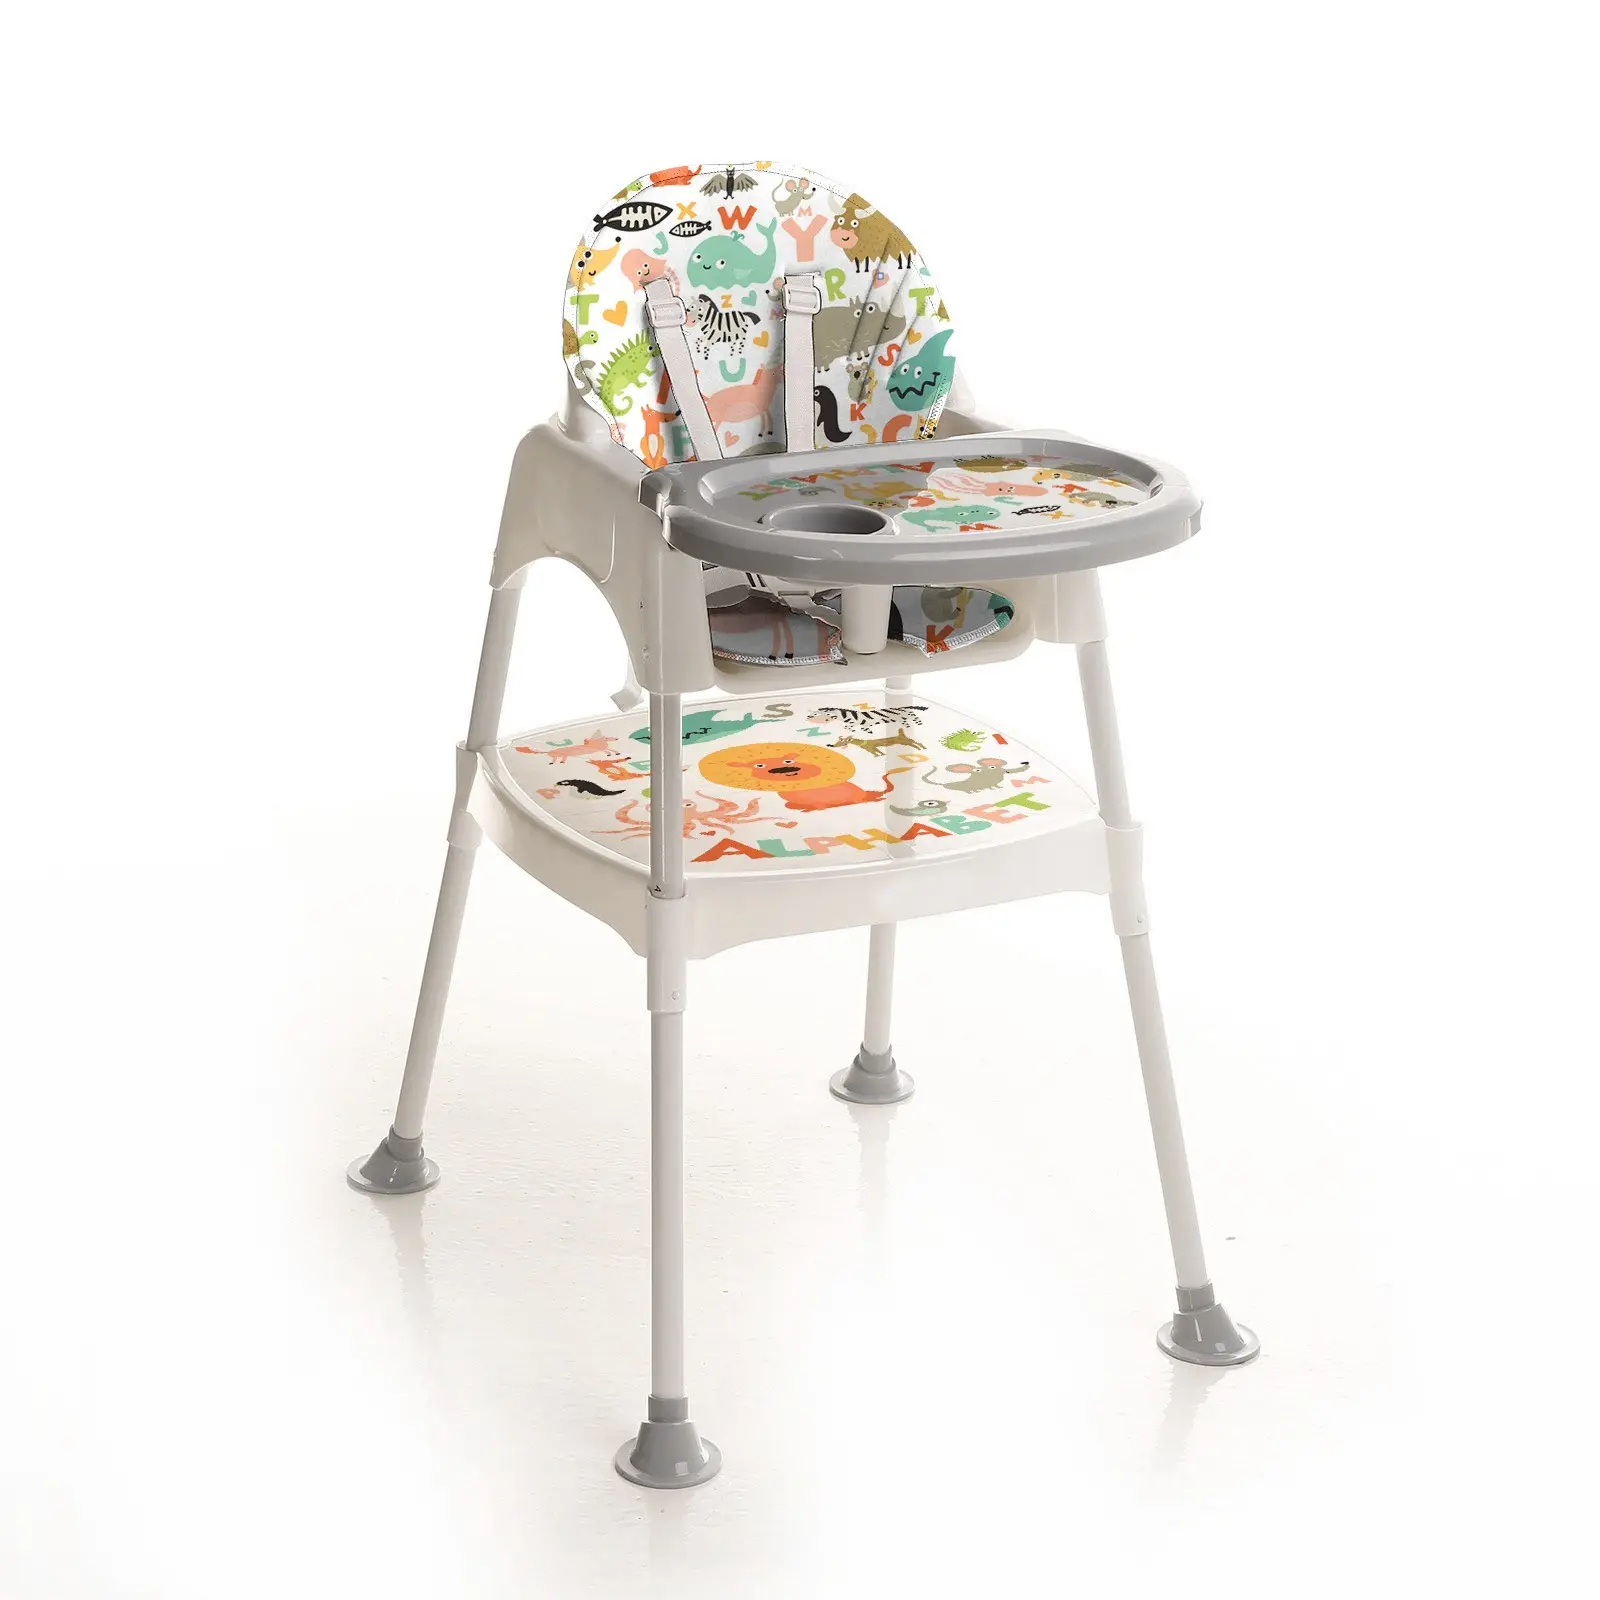 Çok fonksiyonlu yüksek sandalye bebek besleme yüksek sandalye cabrio bebek yemek sandalyesi türkiye'de yapılan